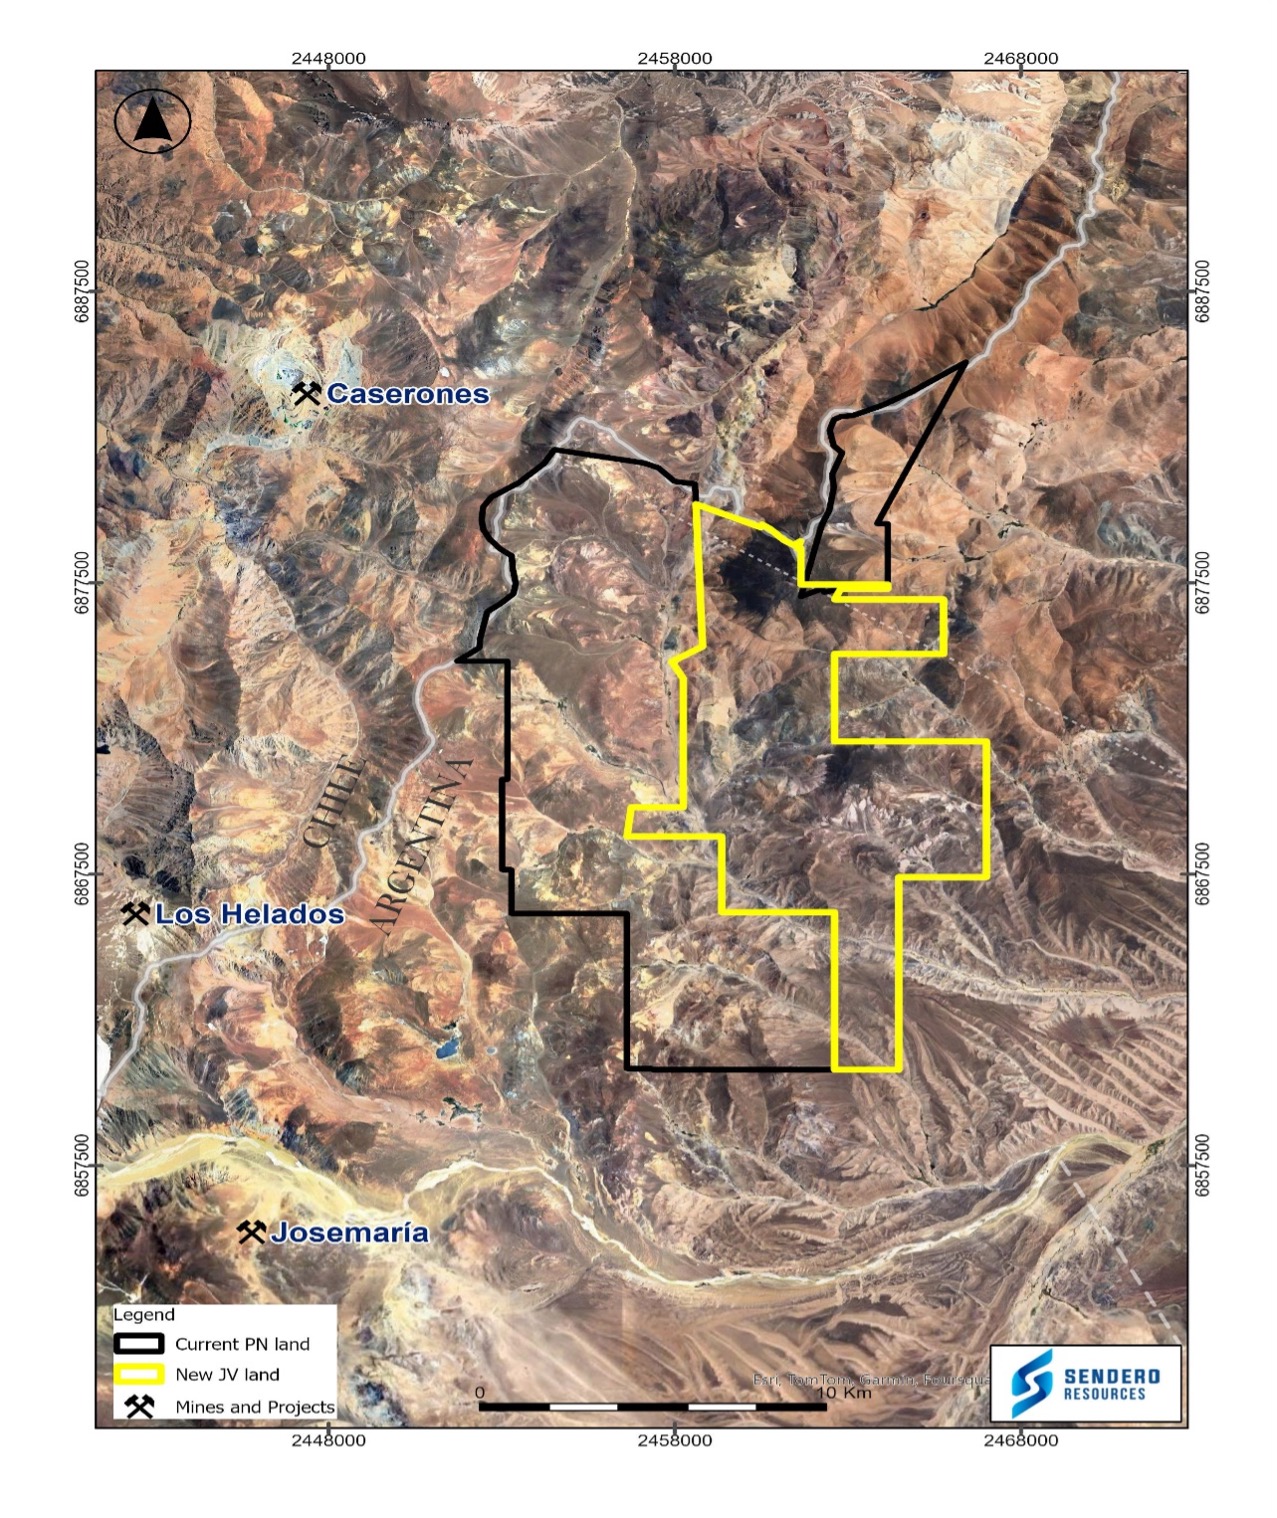 Mayor Posición de Terreno en el Distrito de Vicuña - Sendero Resources